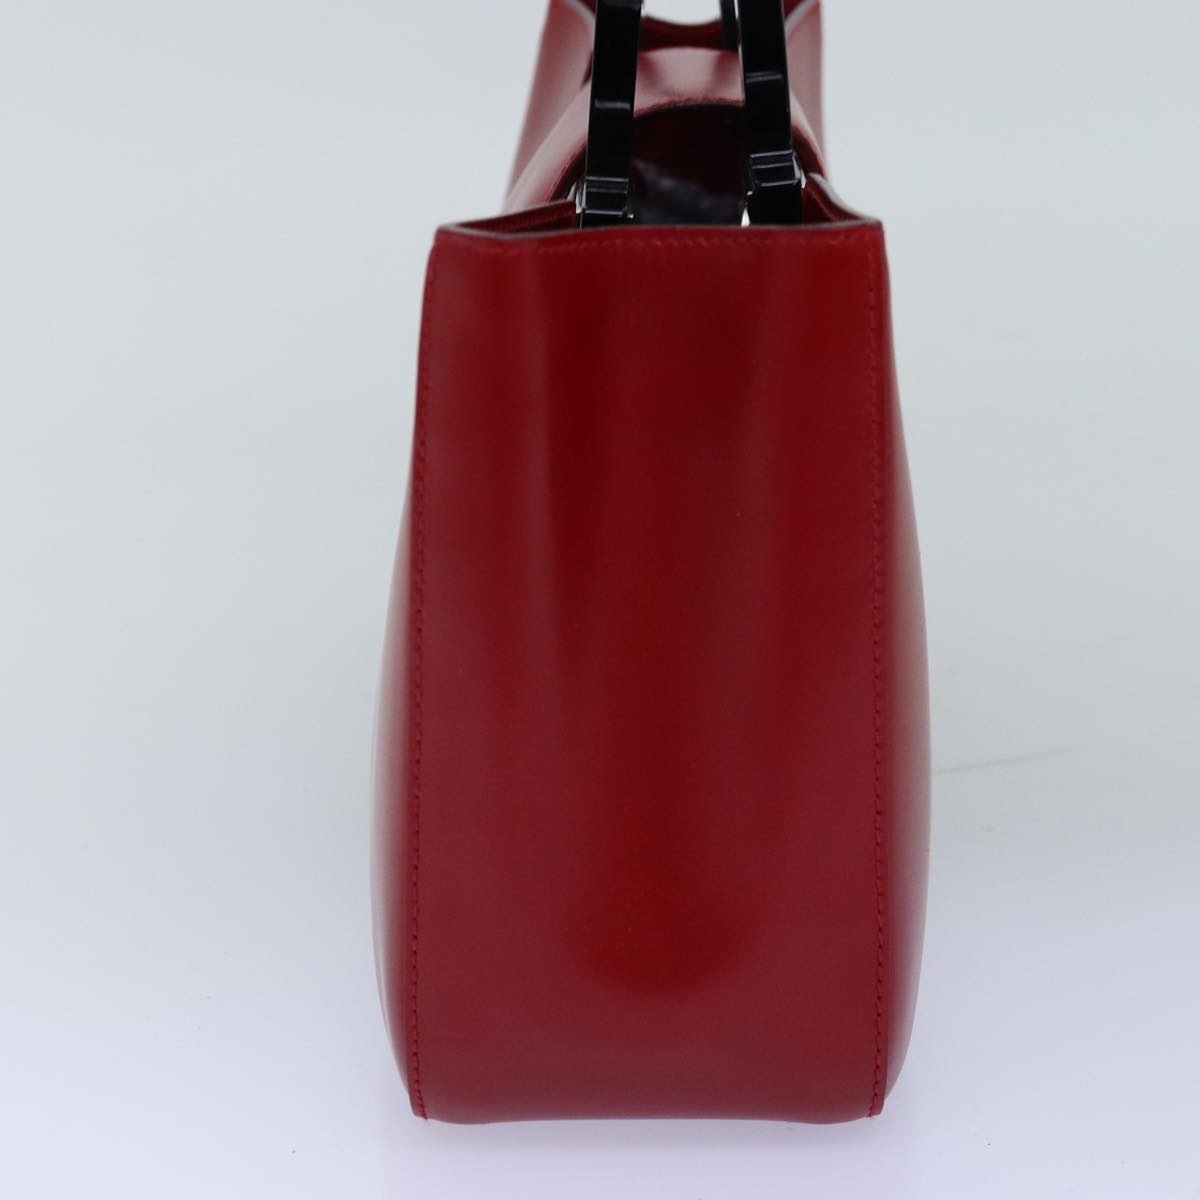 Salvatore Ferragamo Gancini Hand Bag Leather Red Auth 74408